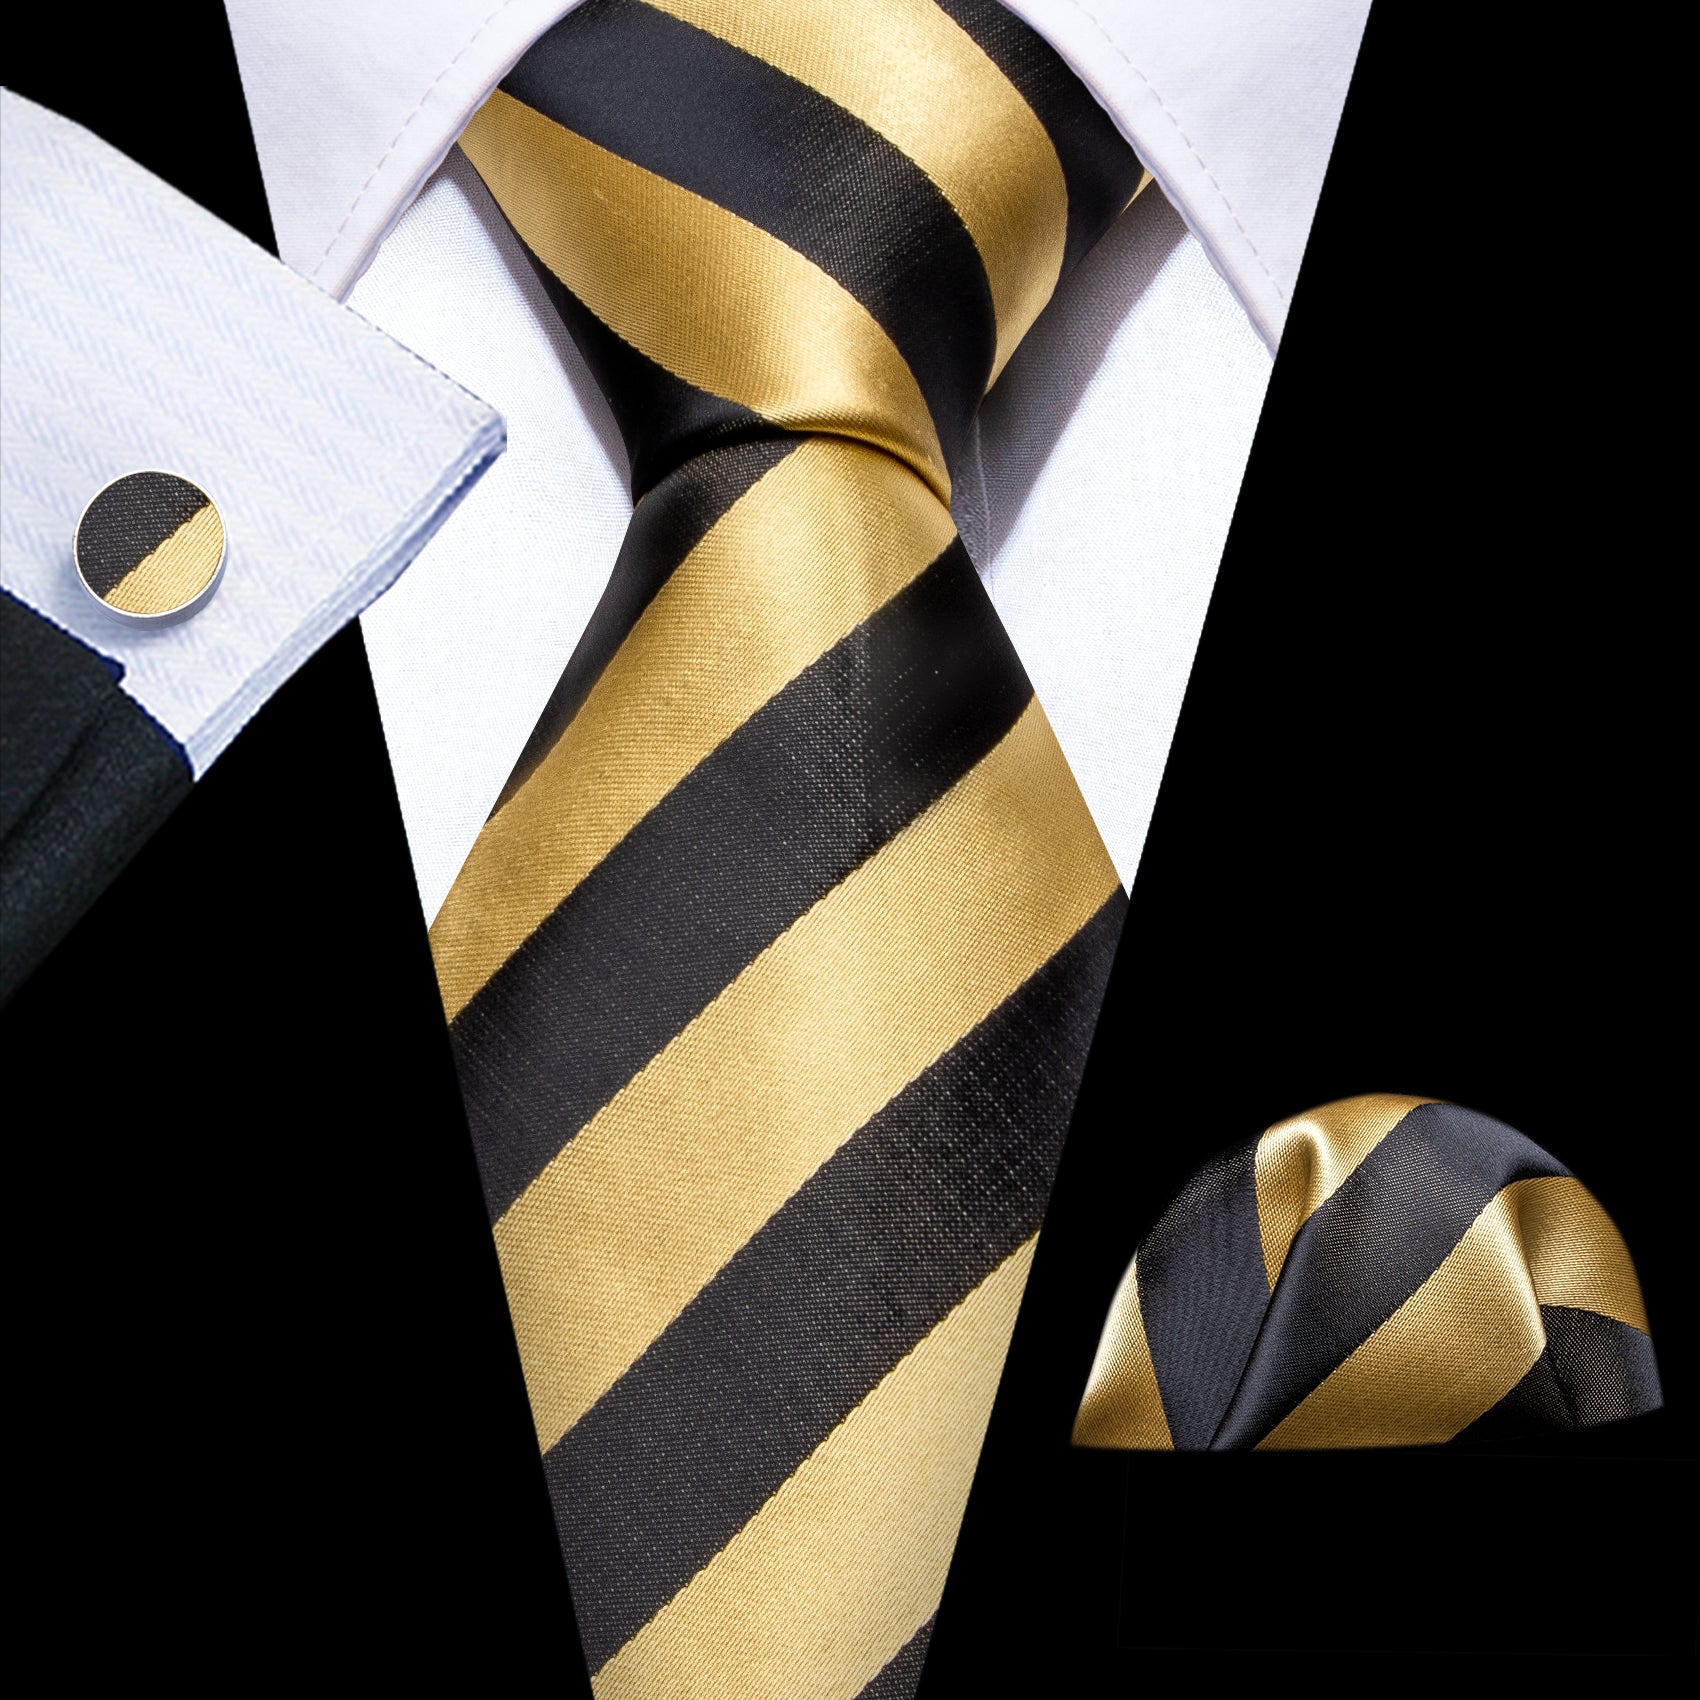 Barry.wang Black Tie Yellow Striped Silk Men's Tie Hanky Cufflinks Set